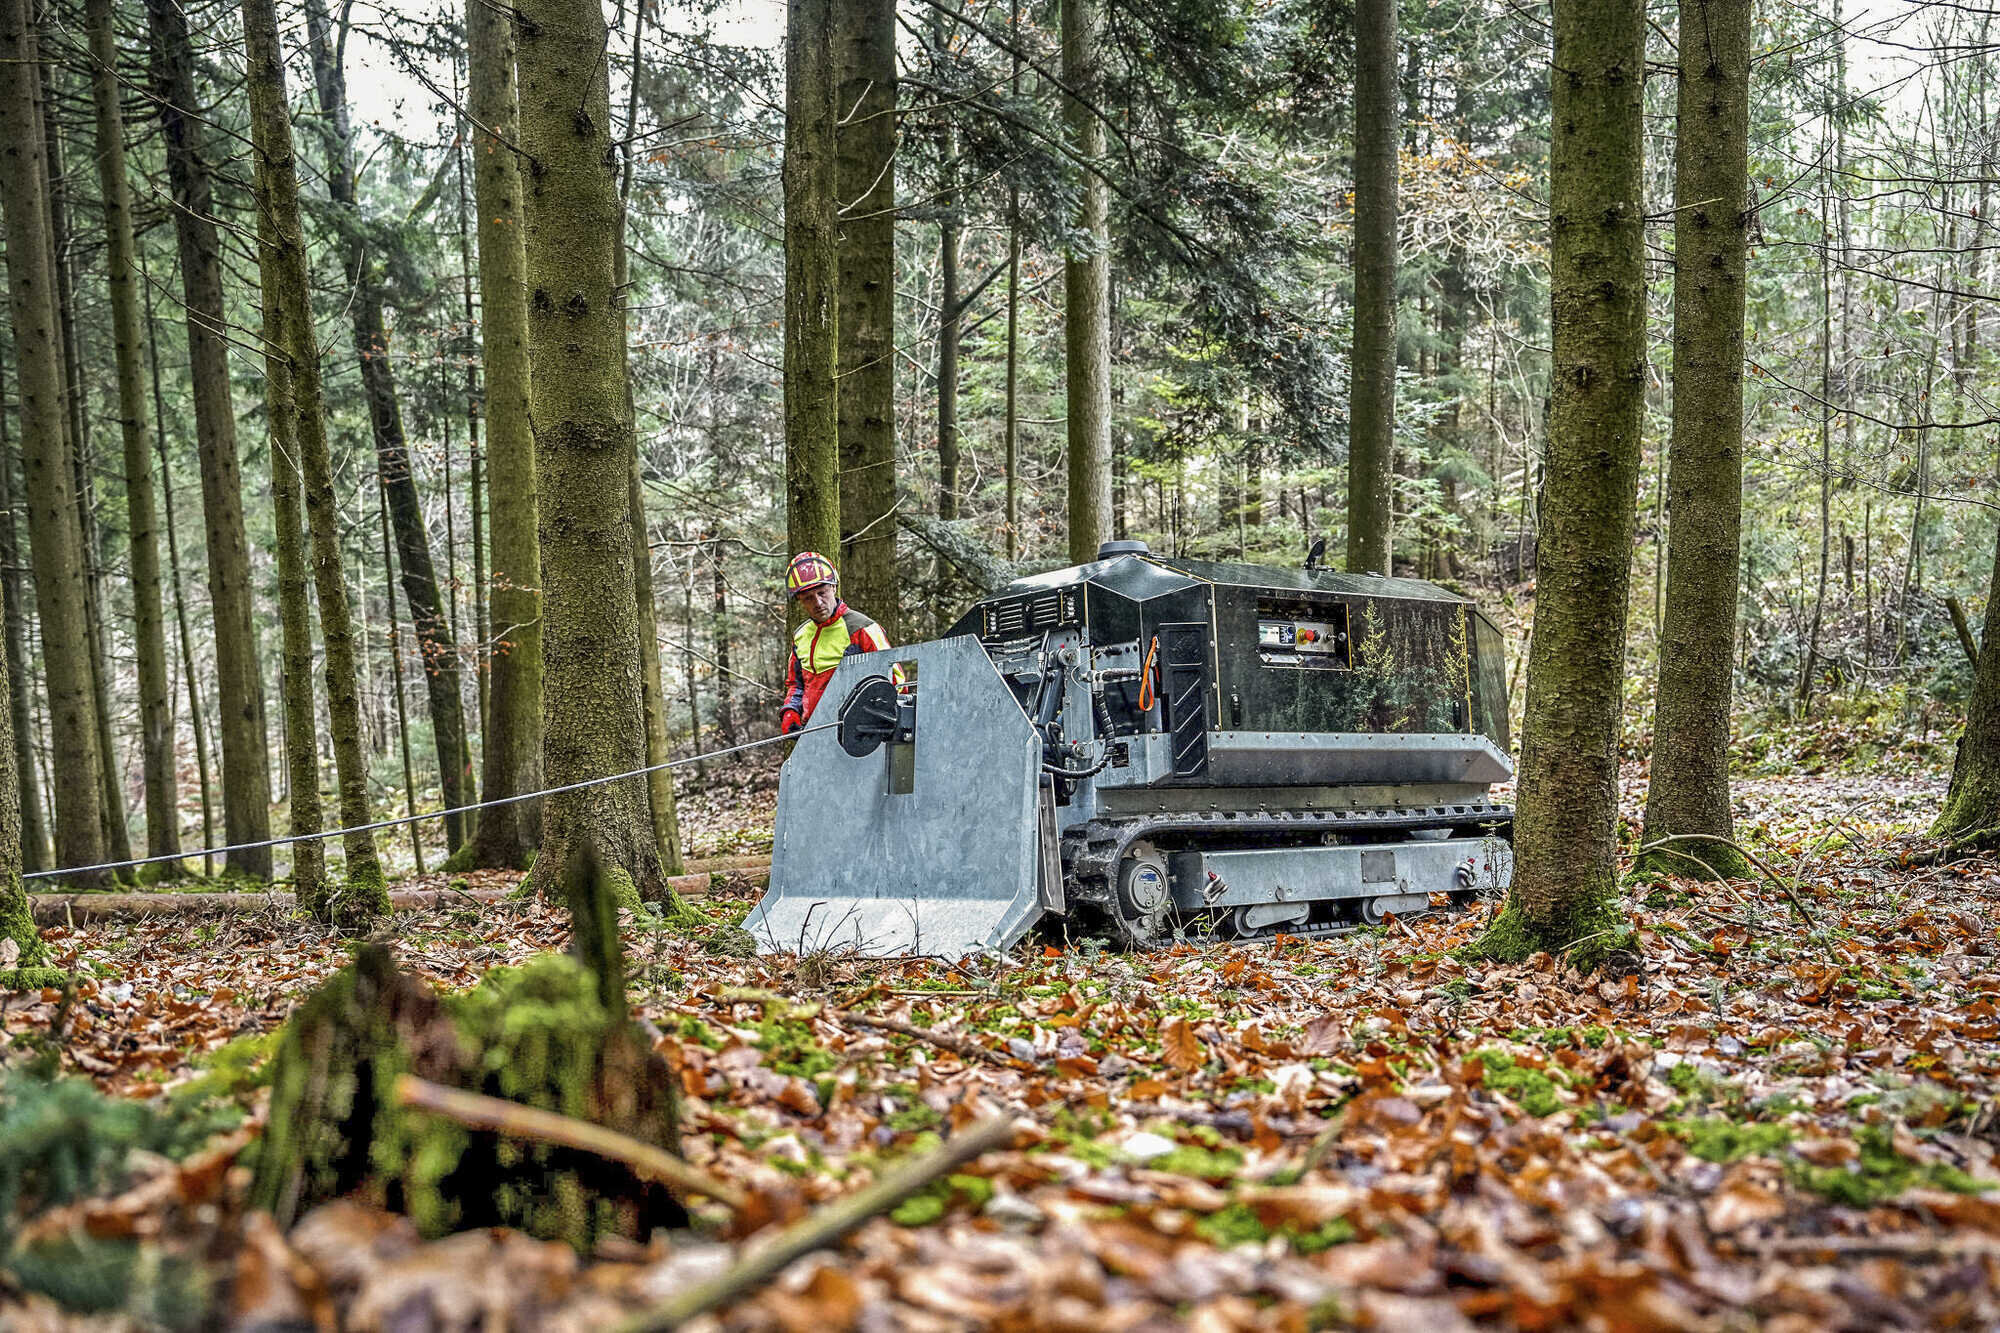 Tuning-Tipps für Forst-Equipment: Gut gerüstet in den Wald